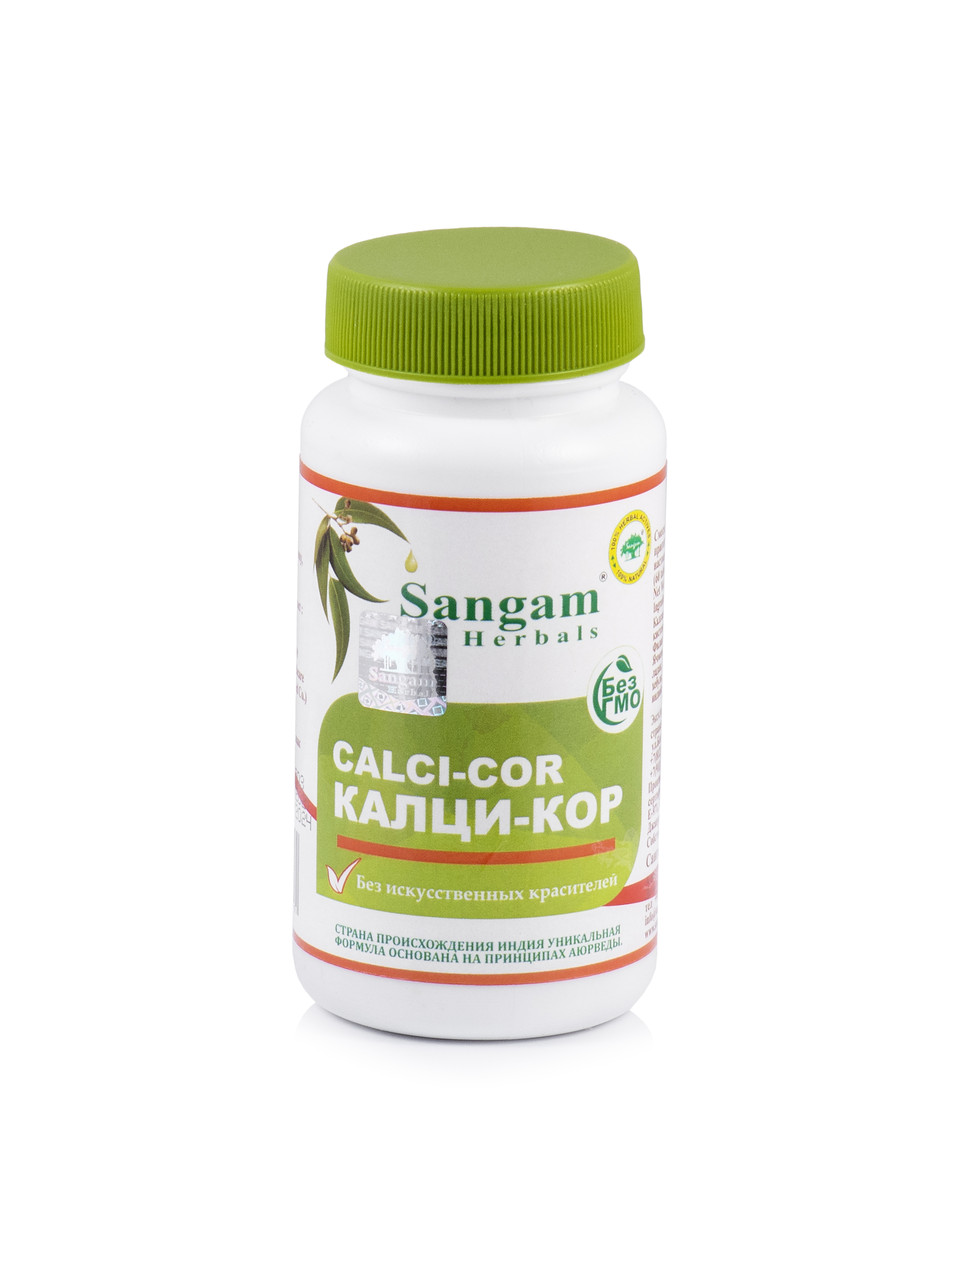 Калци-Кор (Calci-Cor) Sangam Herbals, 60 таб, органический кальций для нормального обмена веществ